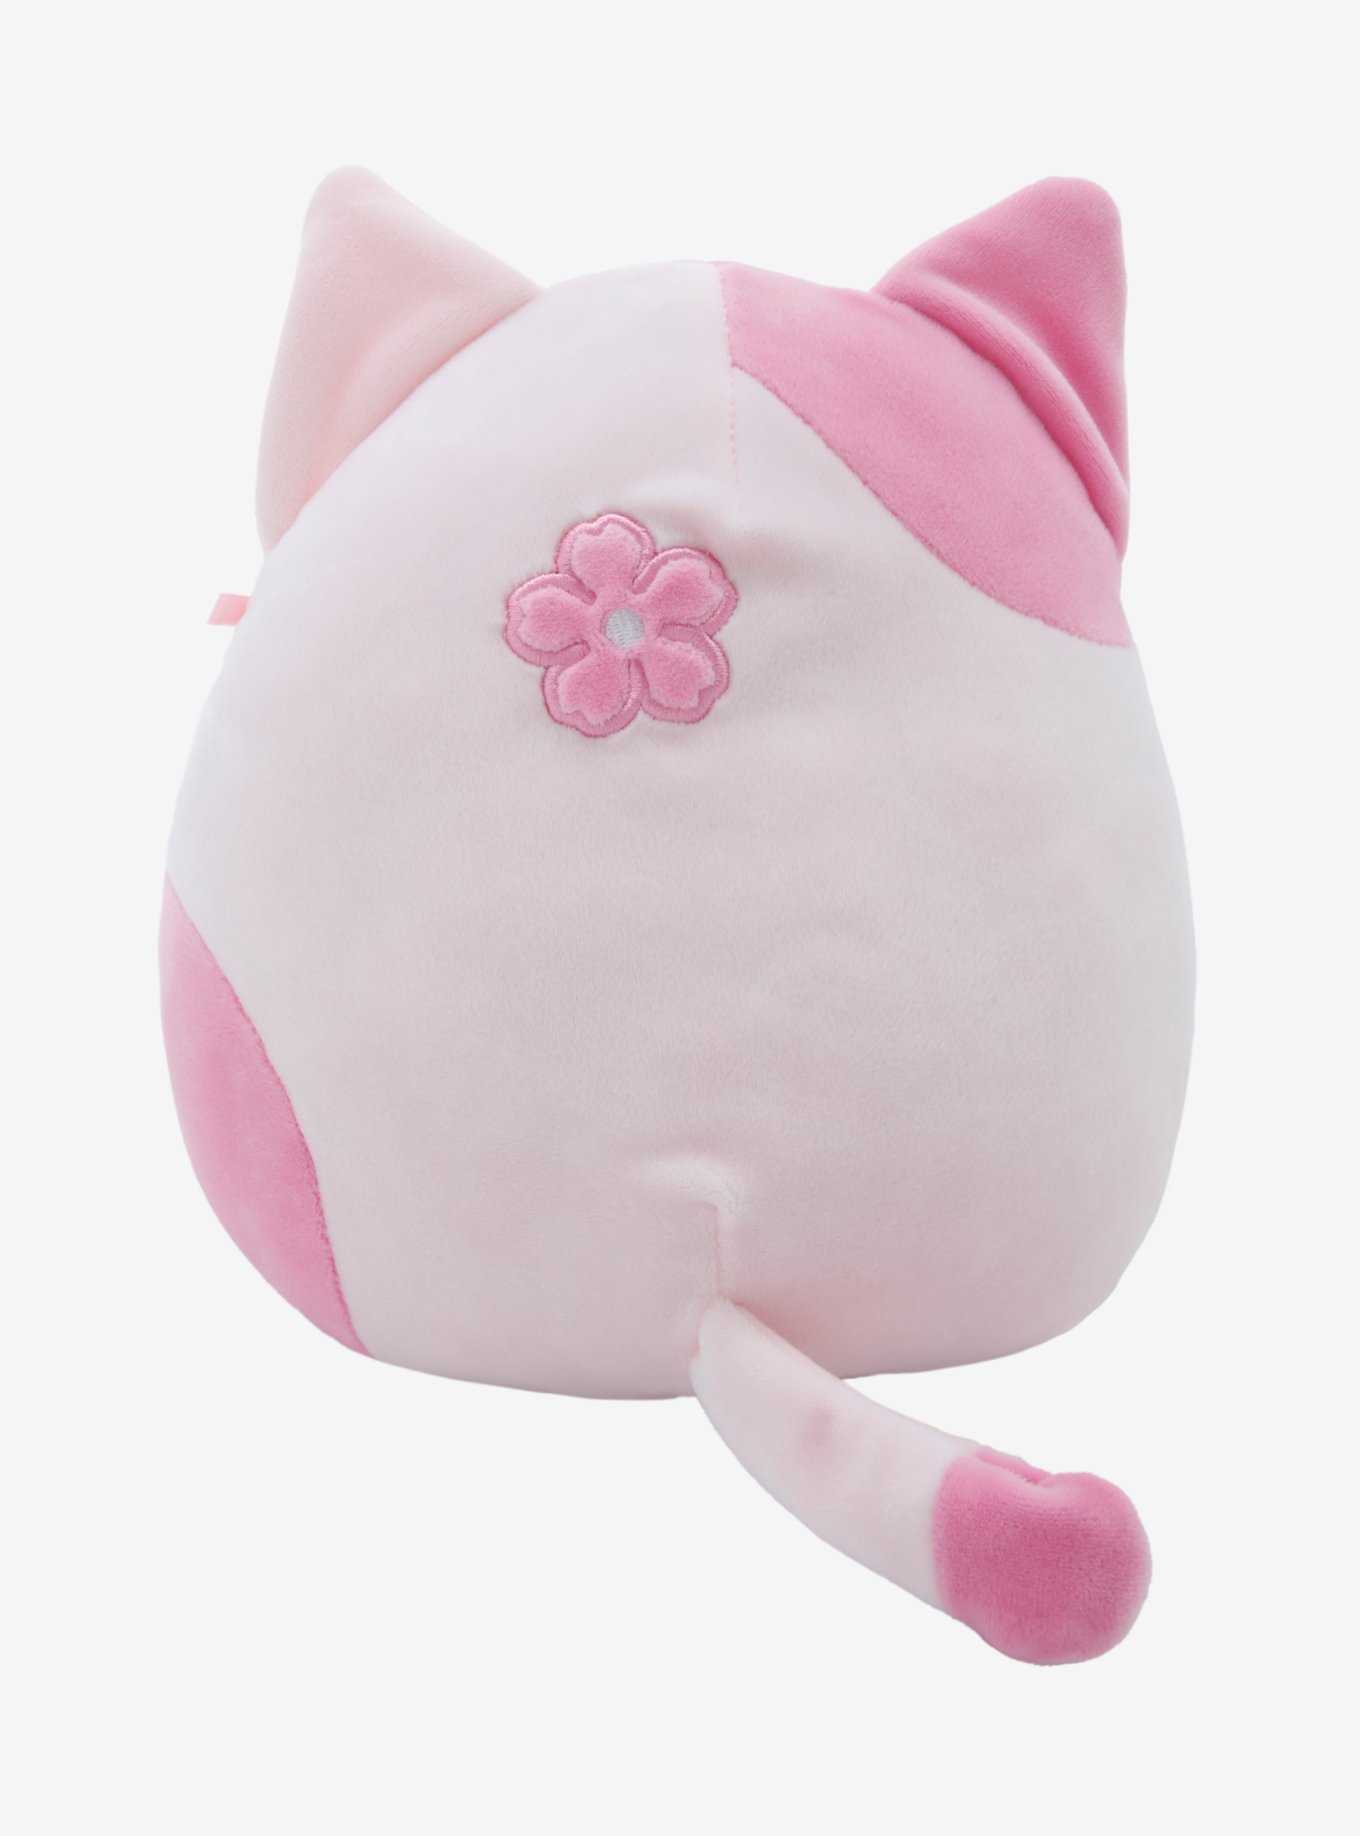 Squishmallows Sakura Cat Plush Hot Topic Exclusive, , hi-res